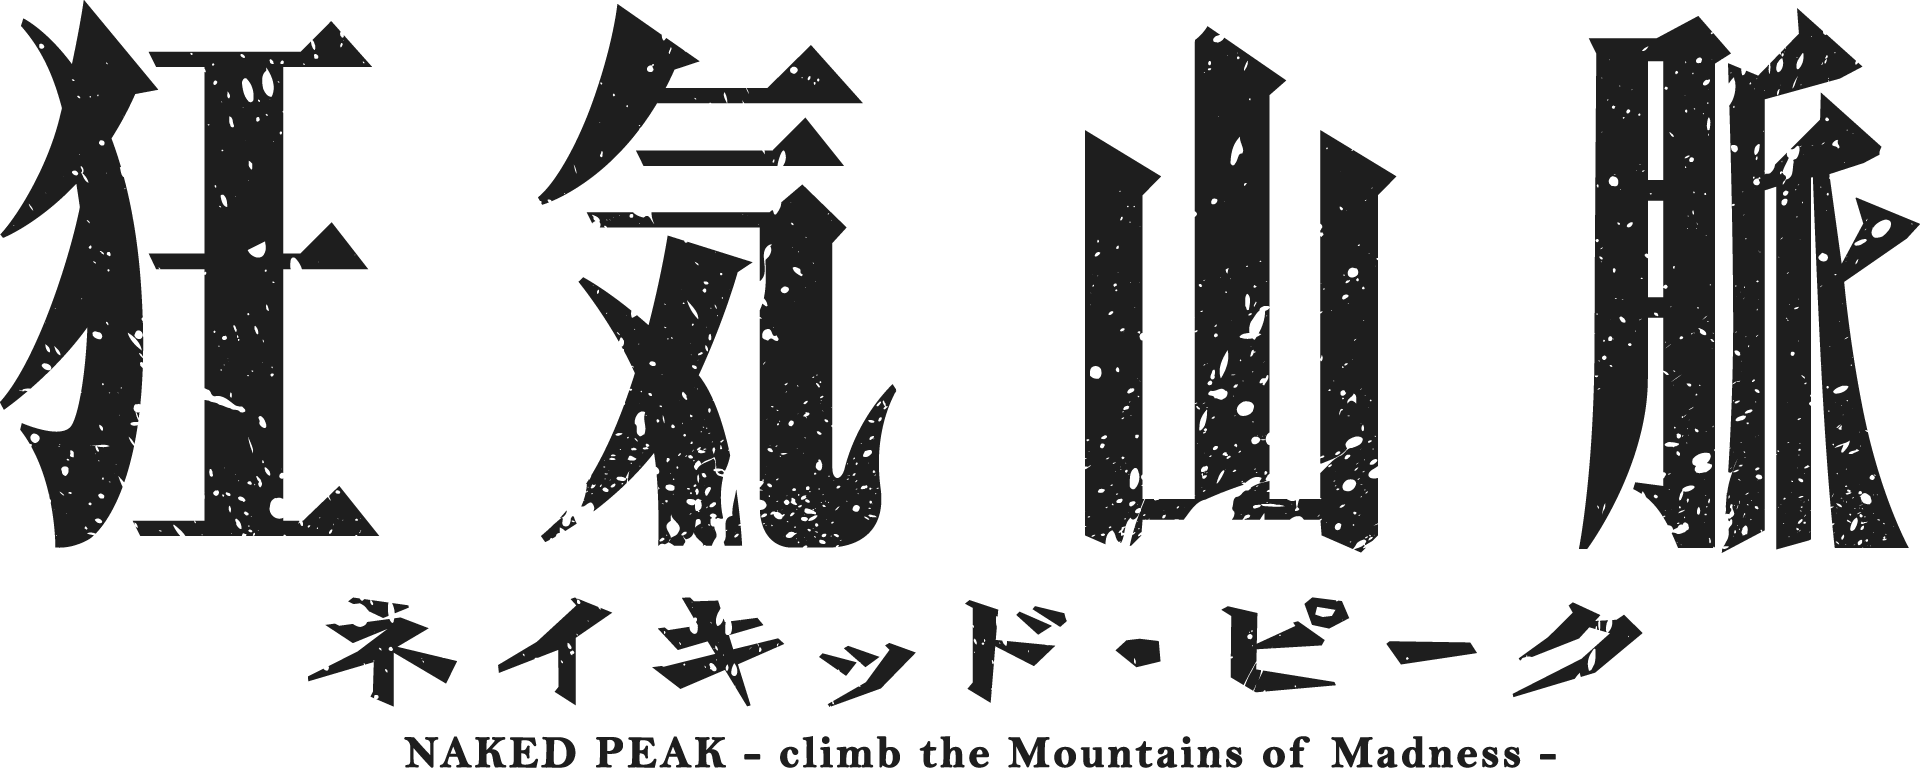 狂気山脈 ネイキッド・ピーク NAKED PEAK - climb of the Mountain of Madness